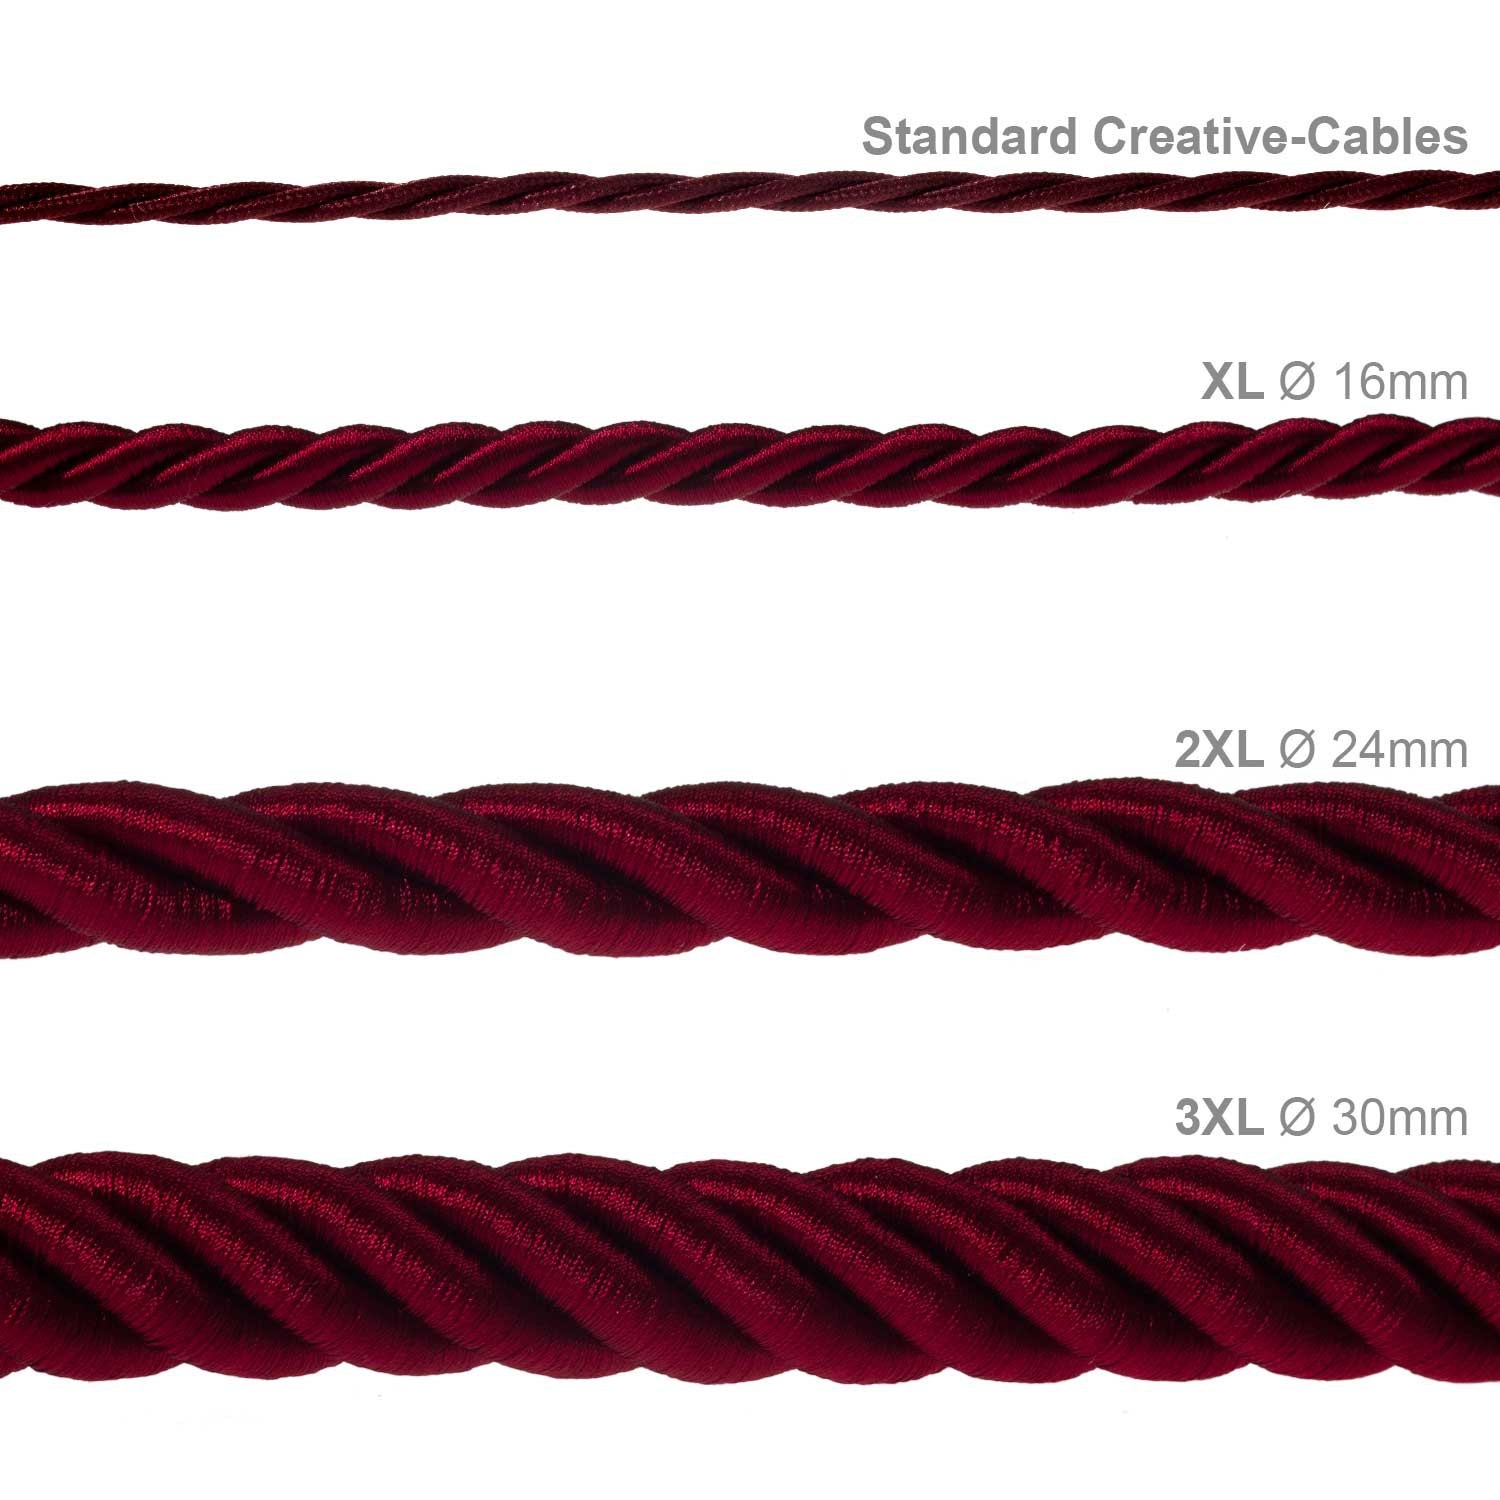 Cordón 2XL, cable eléctrico 3x0,75, recubierto en tejido burdeos oscuro brillante. Diámetro: 24mm.